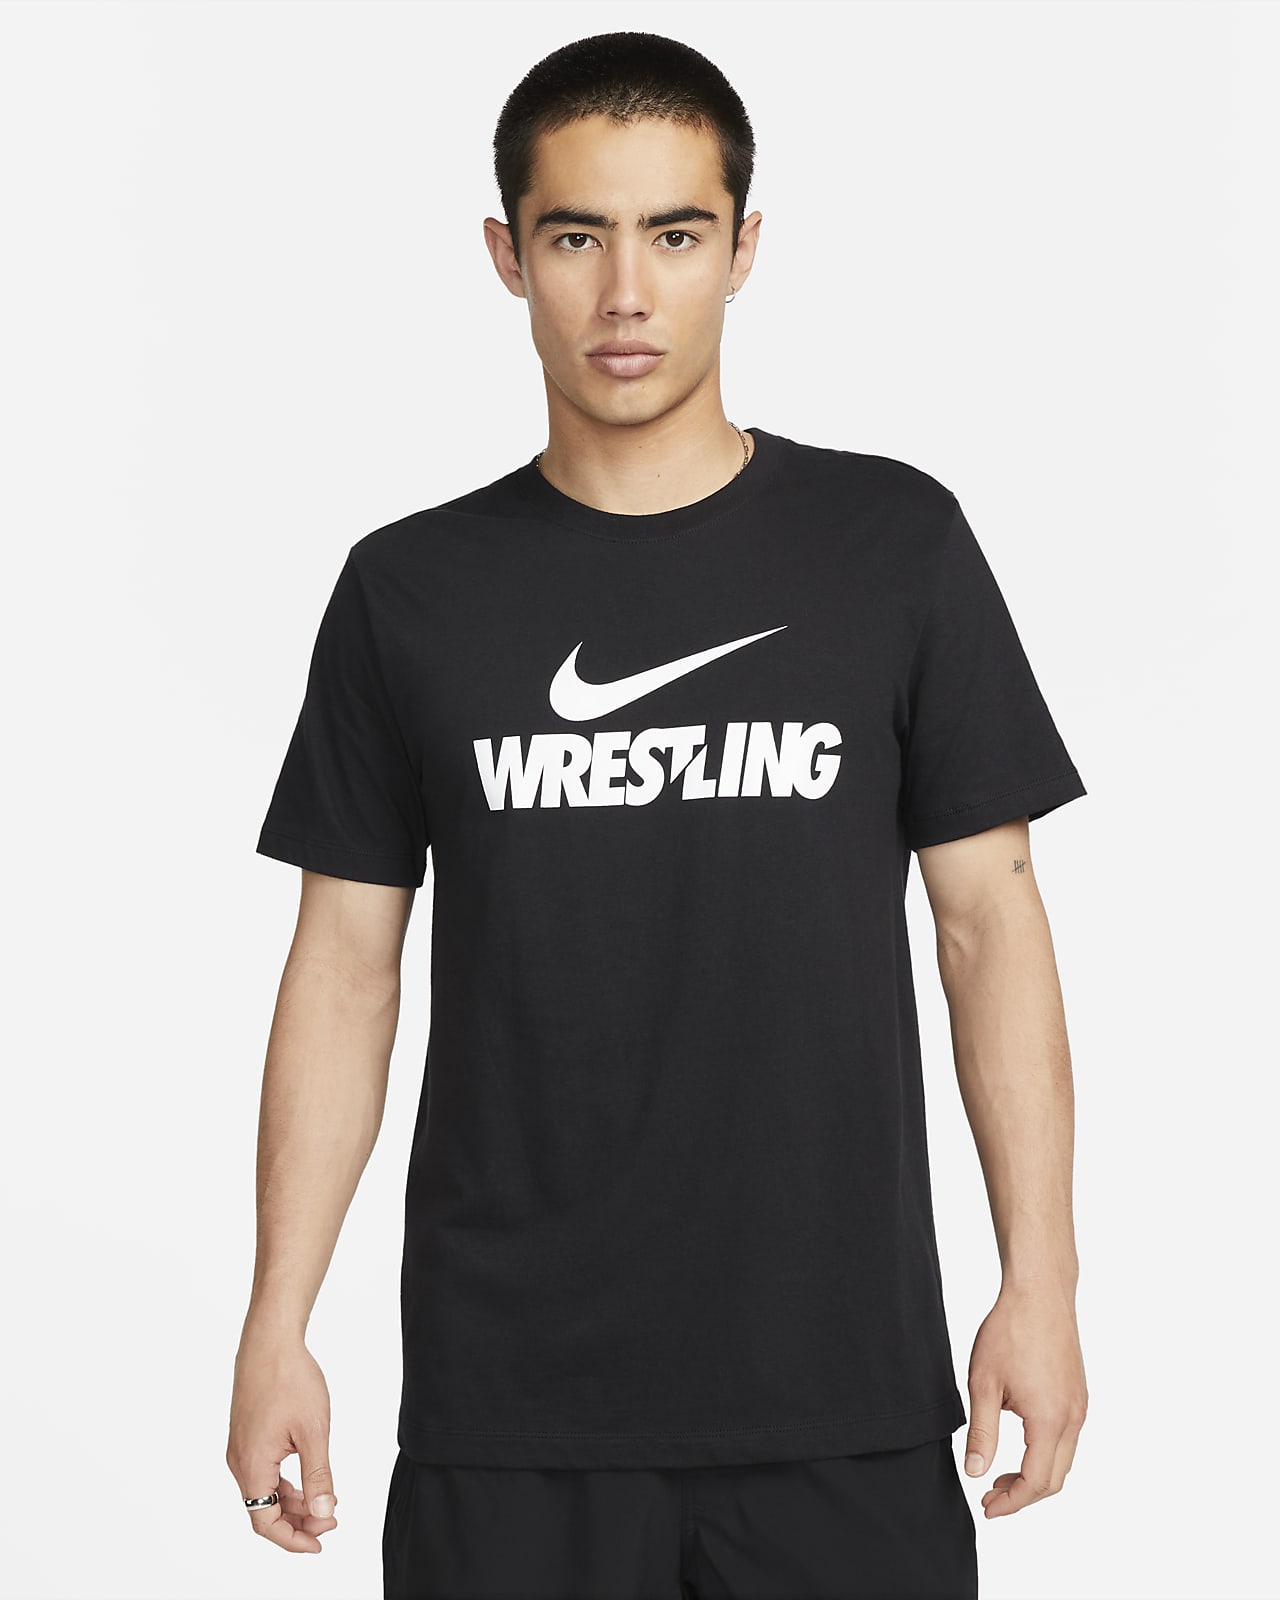 Nike Wrestling Men's T-Shirt